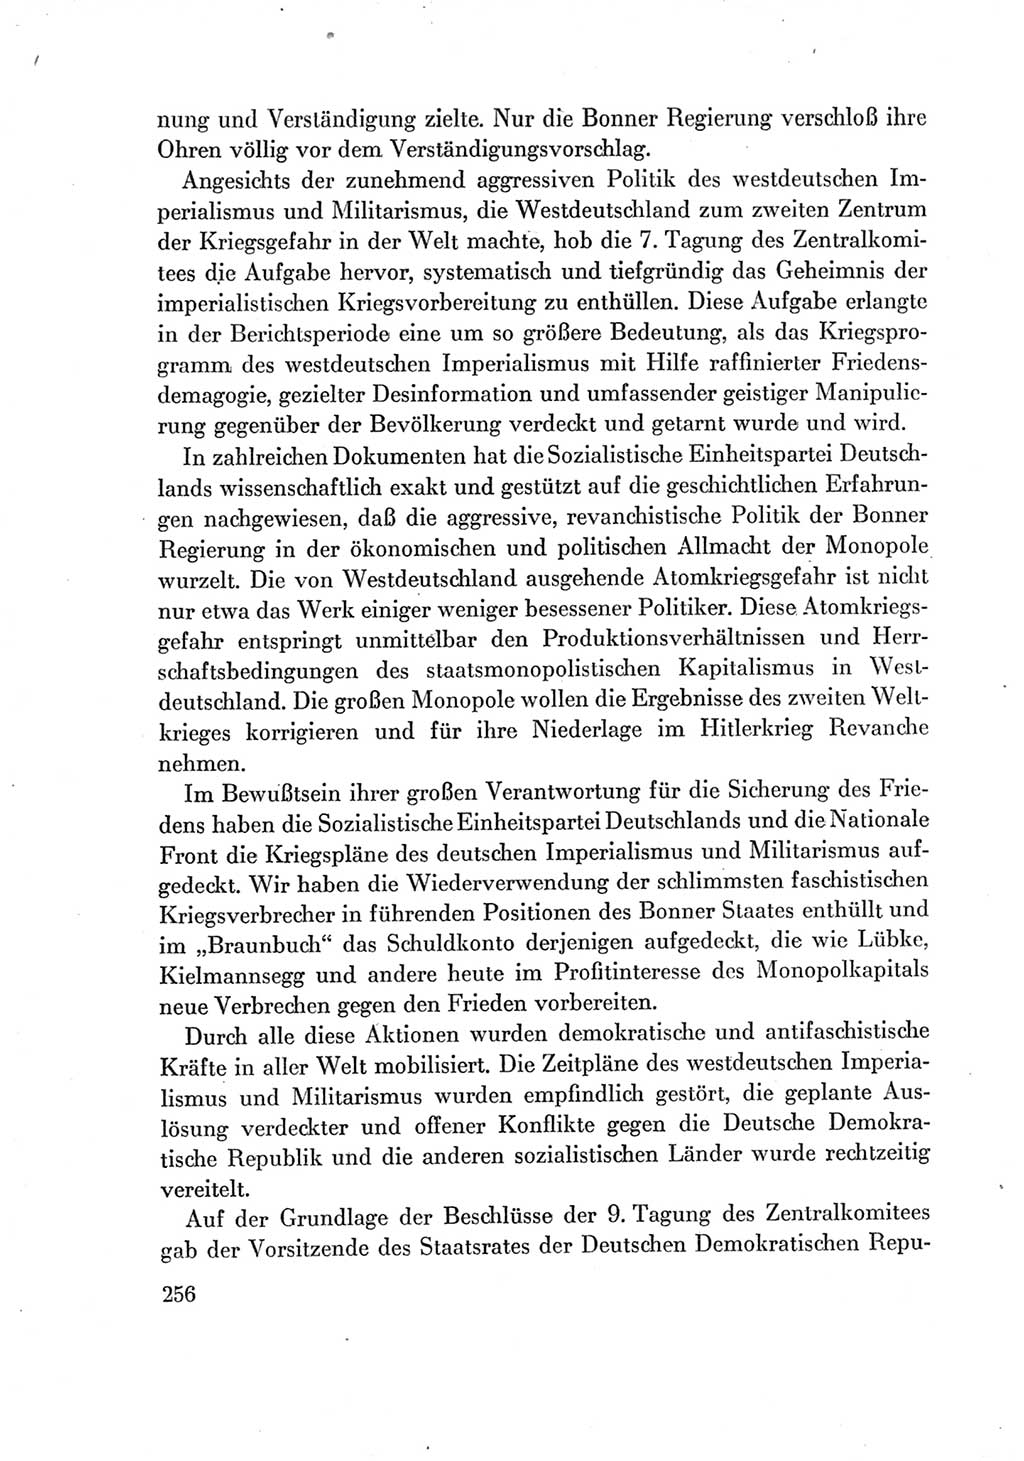 Protokoll der Verhandlungen des Ⅶ. Parteitages der Sozialistischen Einheitspartei Deutschlands (SED) [Deutsche Demokratische Republik (DDR)] 1967, Band Ⅳ, Seite 256 (Prot. Verh. Ⅶ. PT SED DDR 1967, Bd. Ⅳ, S. 256)